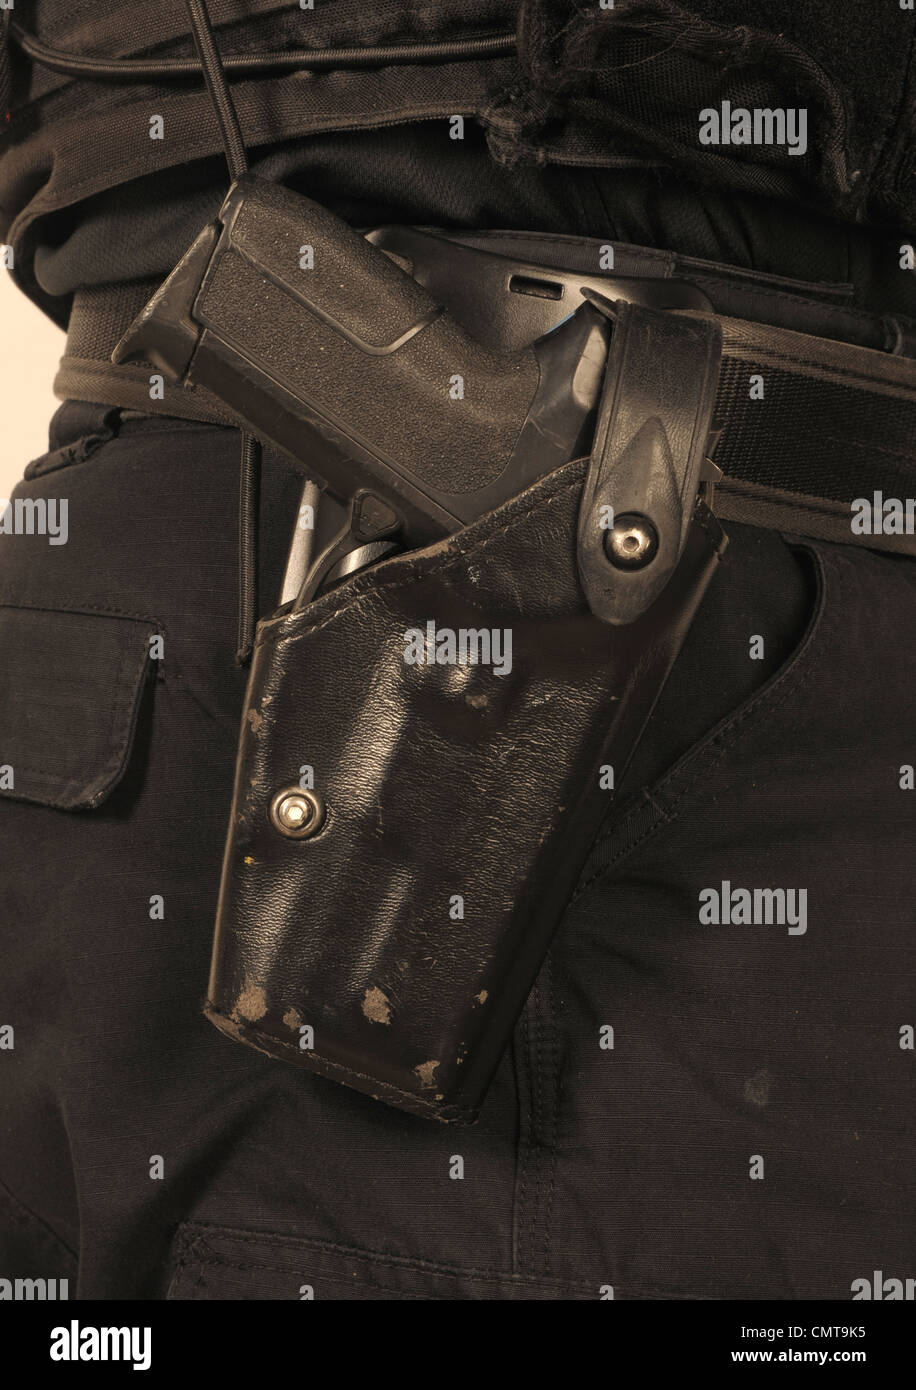 Dettaglio della polizia SWAT officer di utilità di cinghia con holstered Sig Sauer 9mm pistola automatica. La polizia reale ufficiale di SWAT. Foto Stock